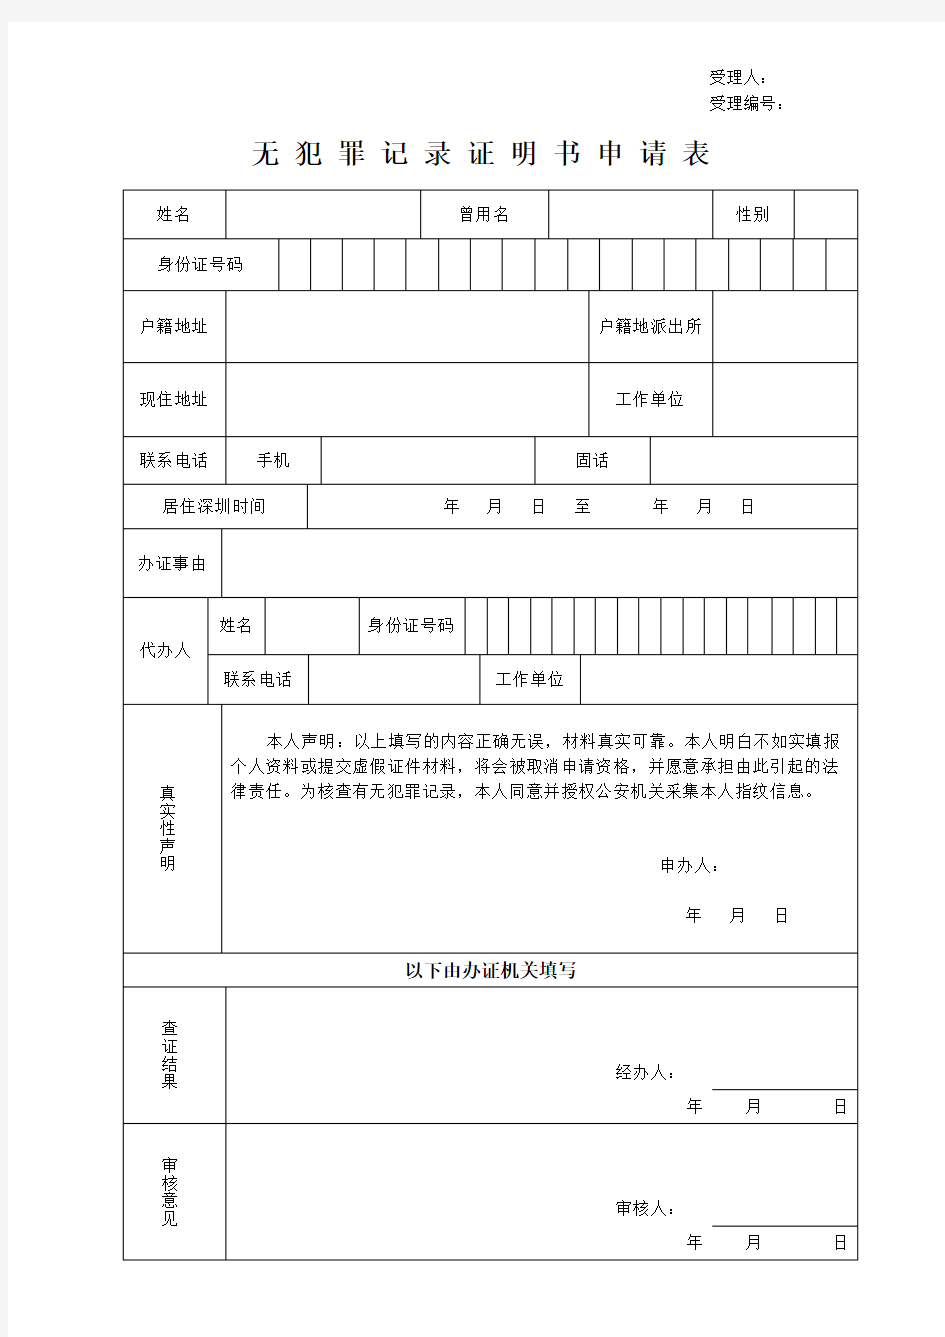 无犯罪记录证明书申请表 - 深圳市公安局